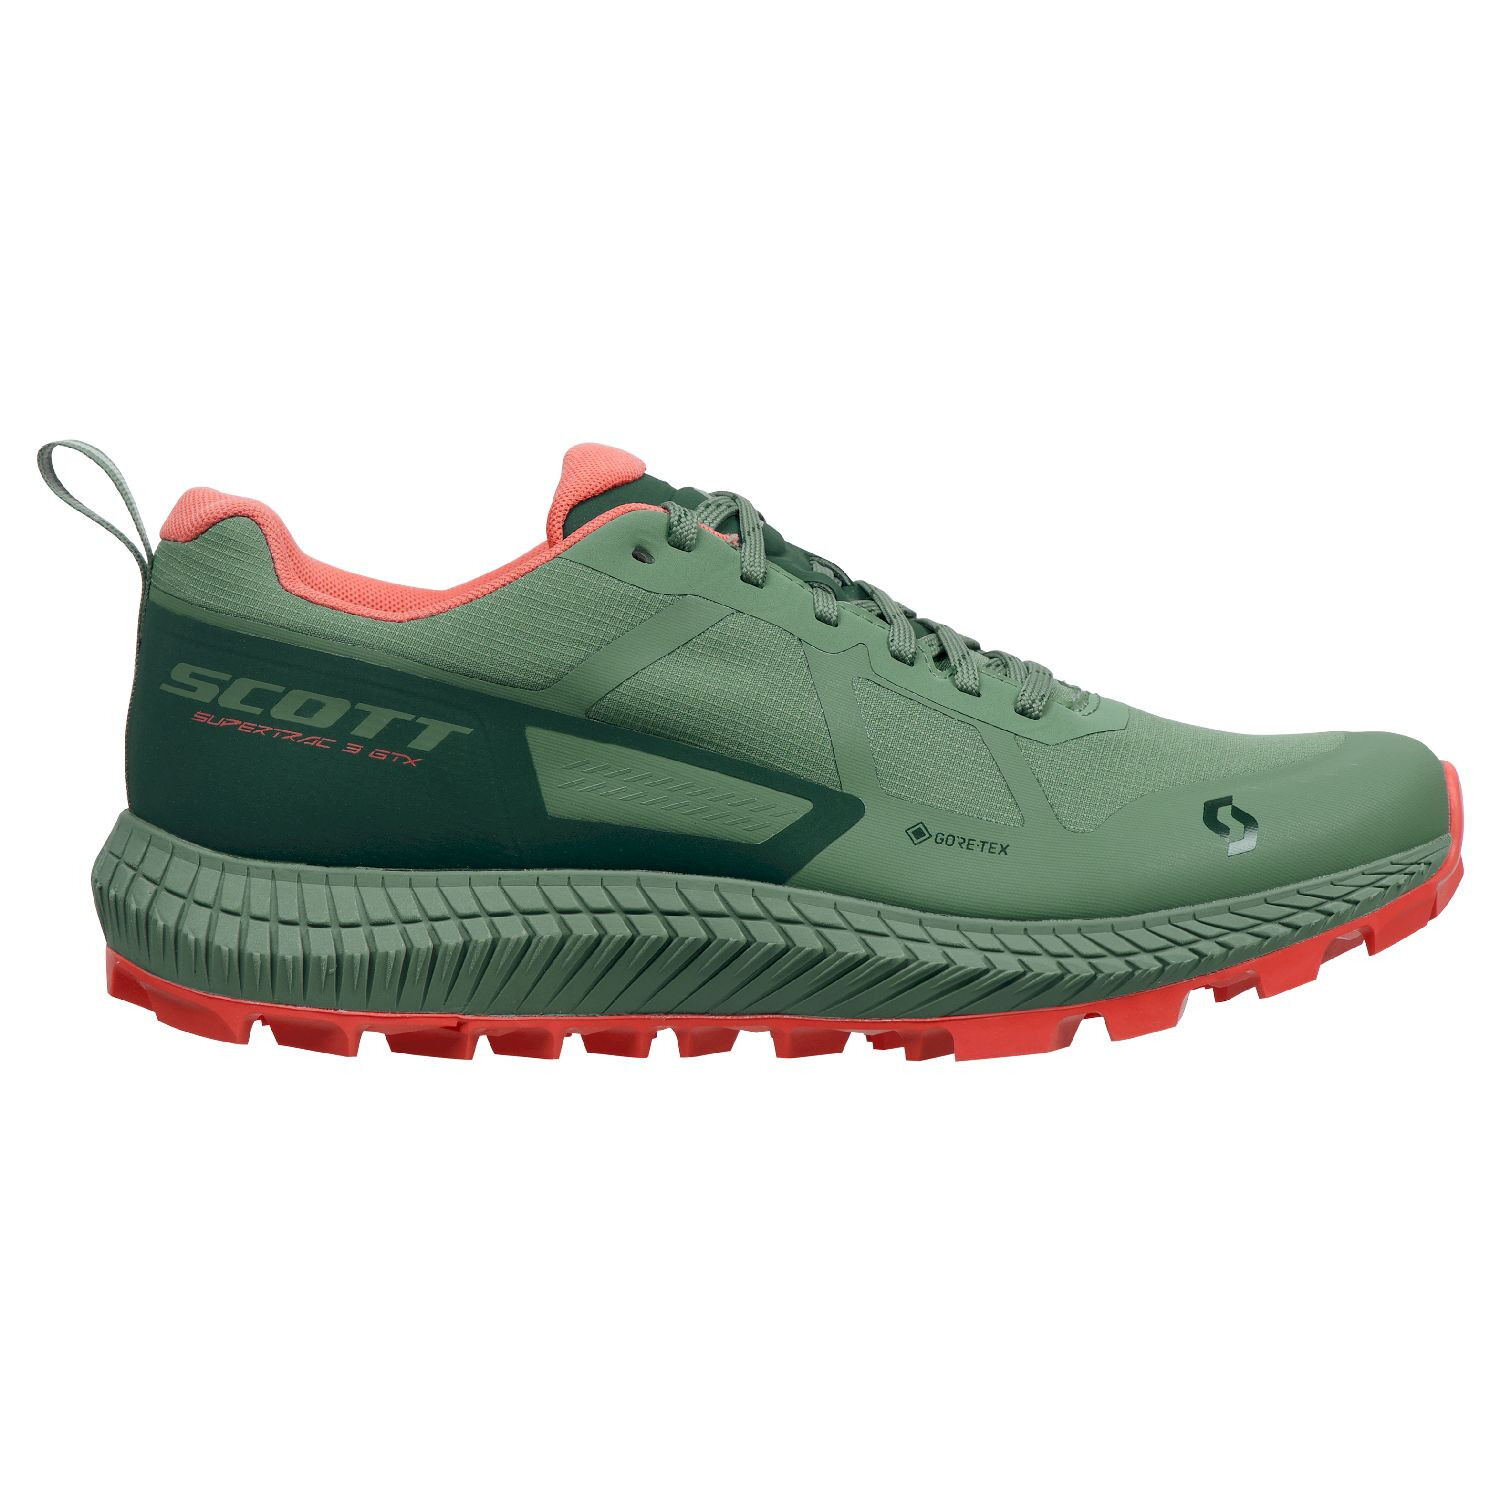 Scott Supertrac 3.0 GTX - Trail running shoes - Women's